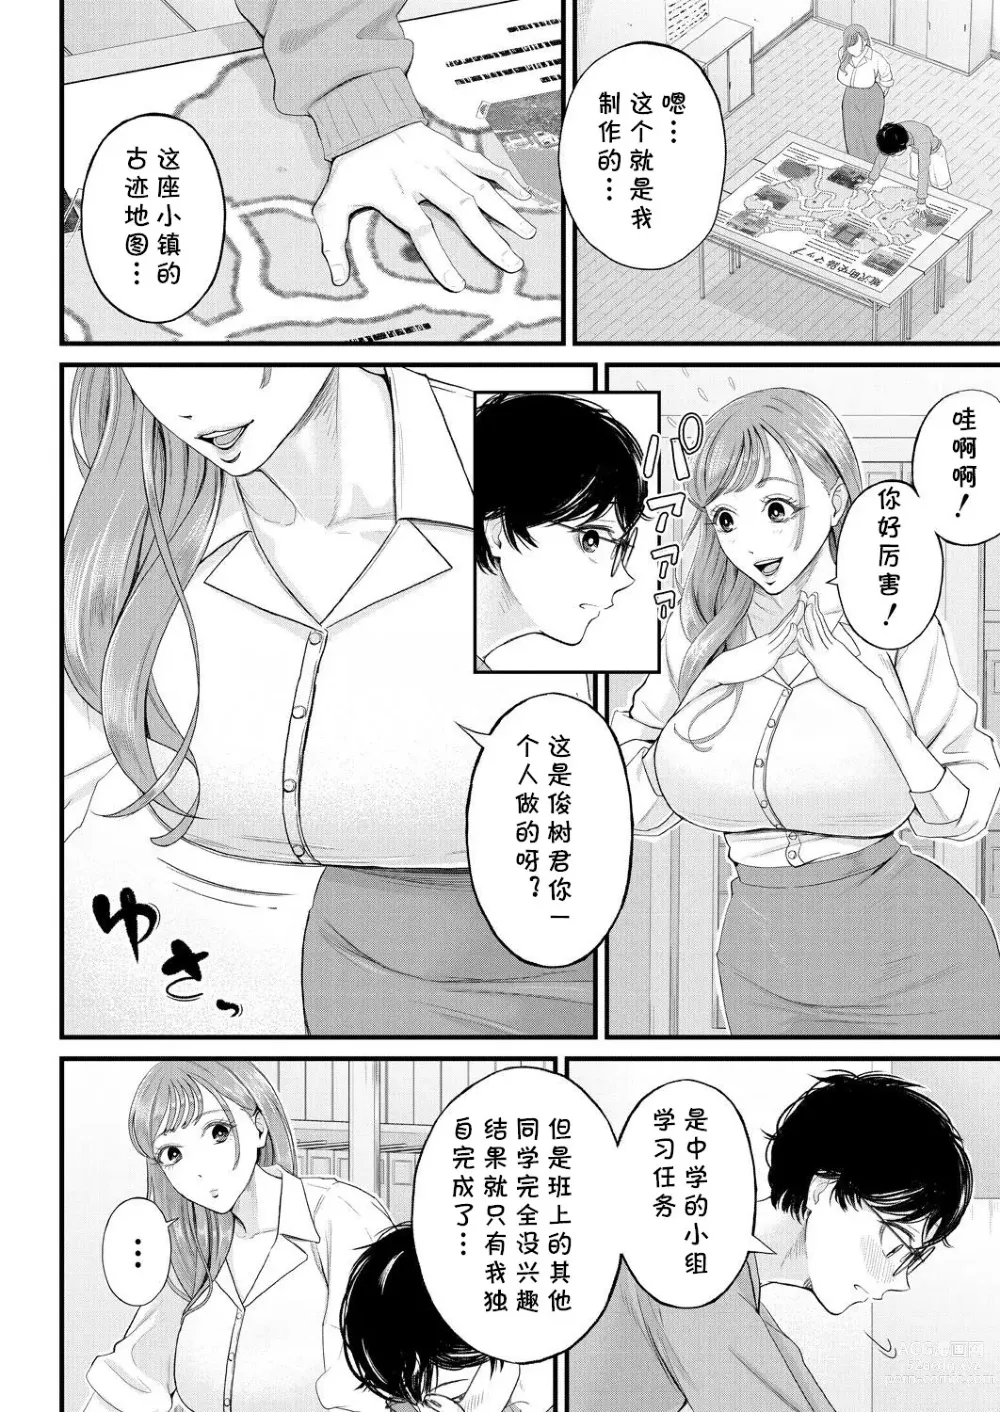 Page 4 of manga Kowaku no Field Work